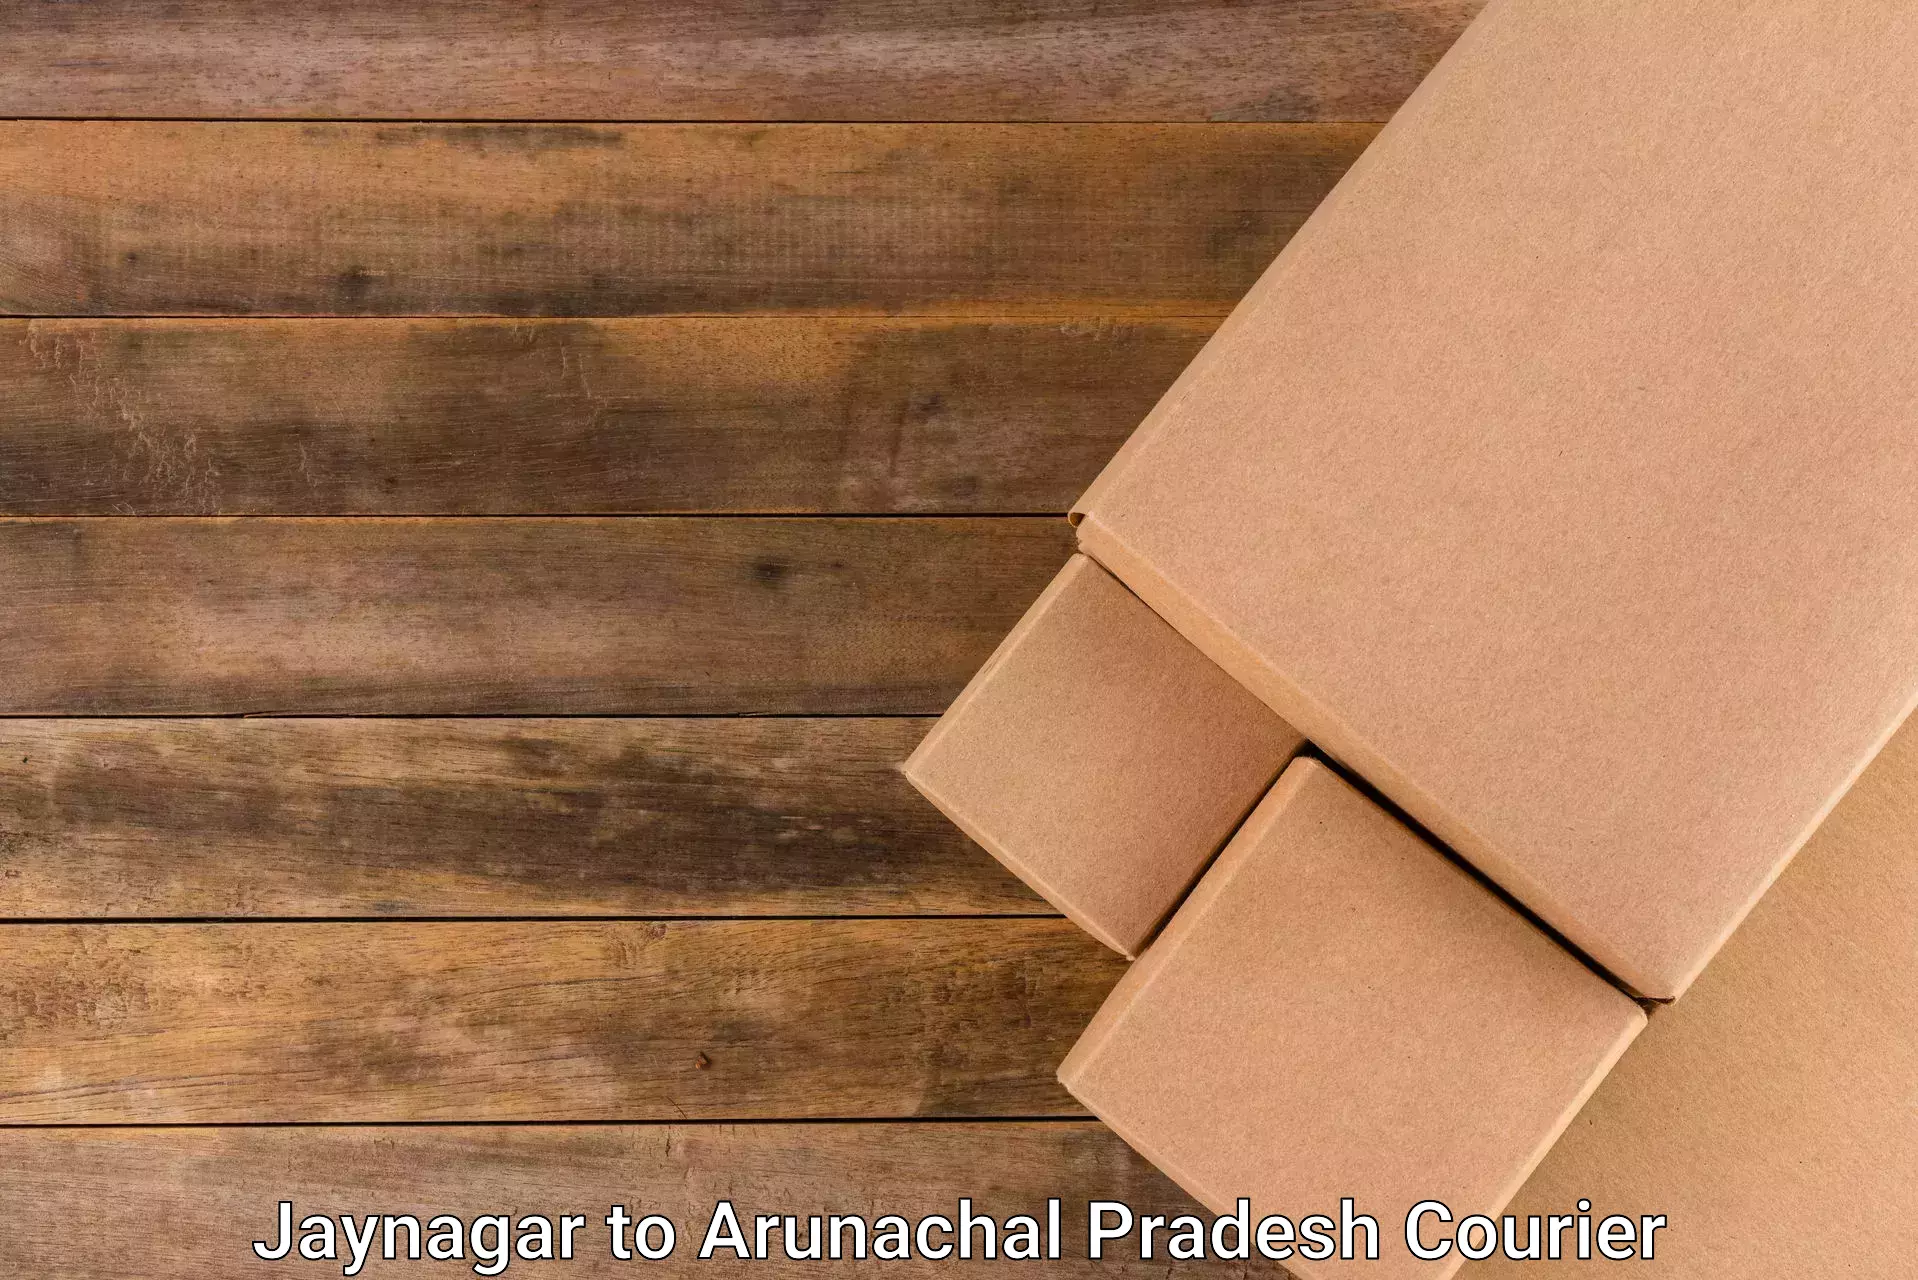 High-speed logistics services Jaynagar to Arunachal Pradesh